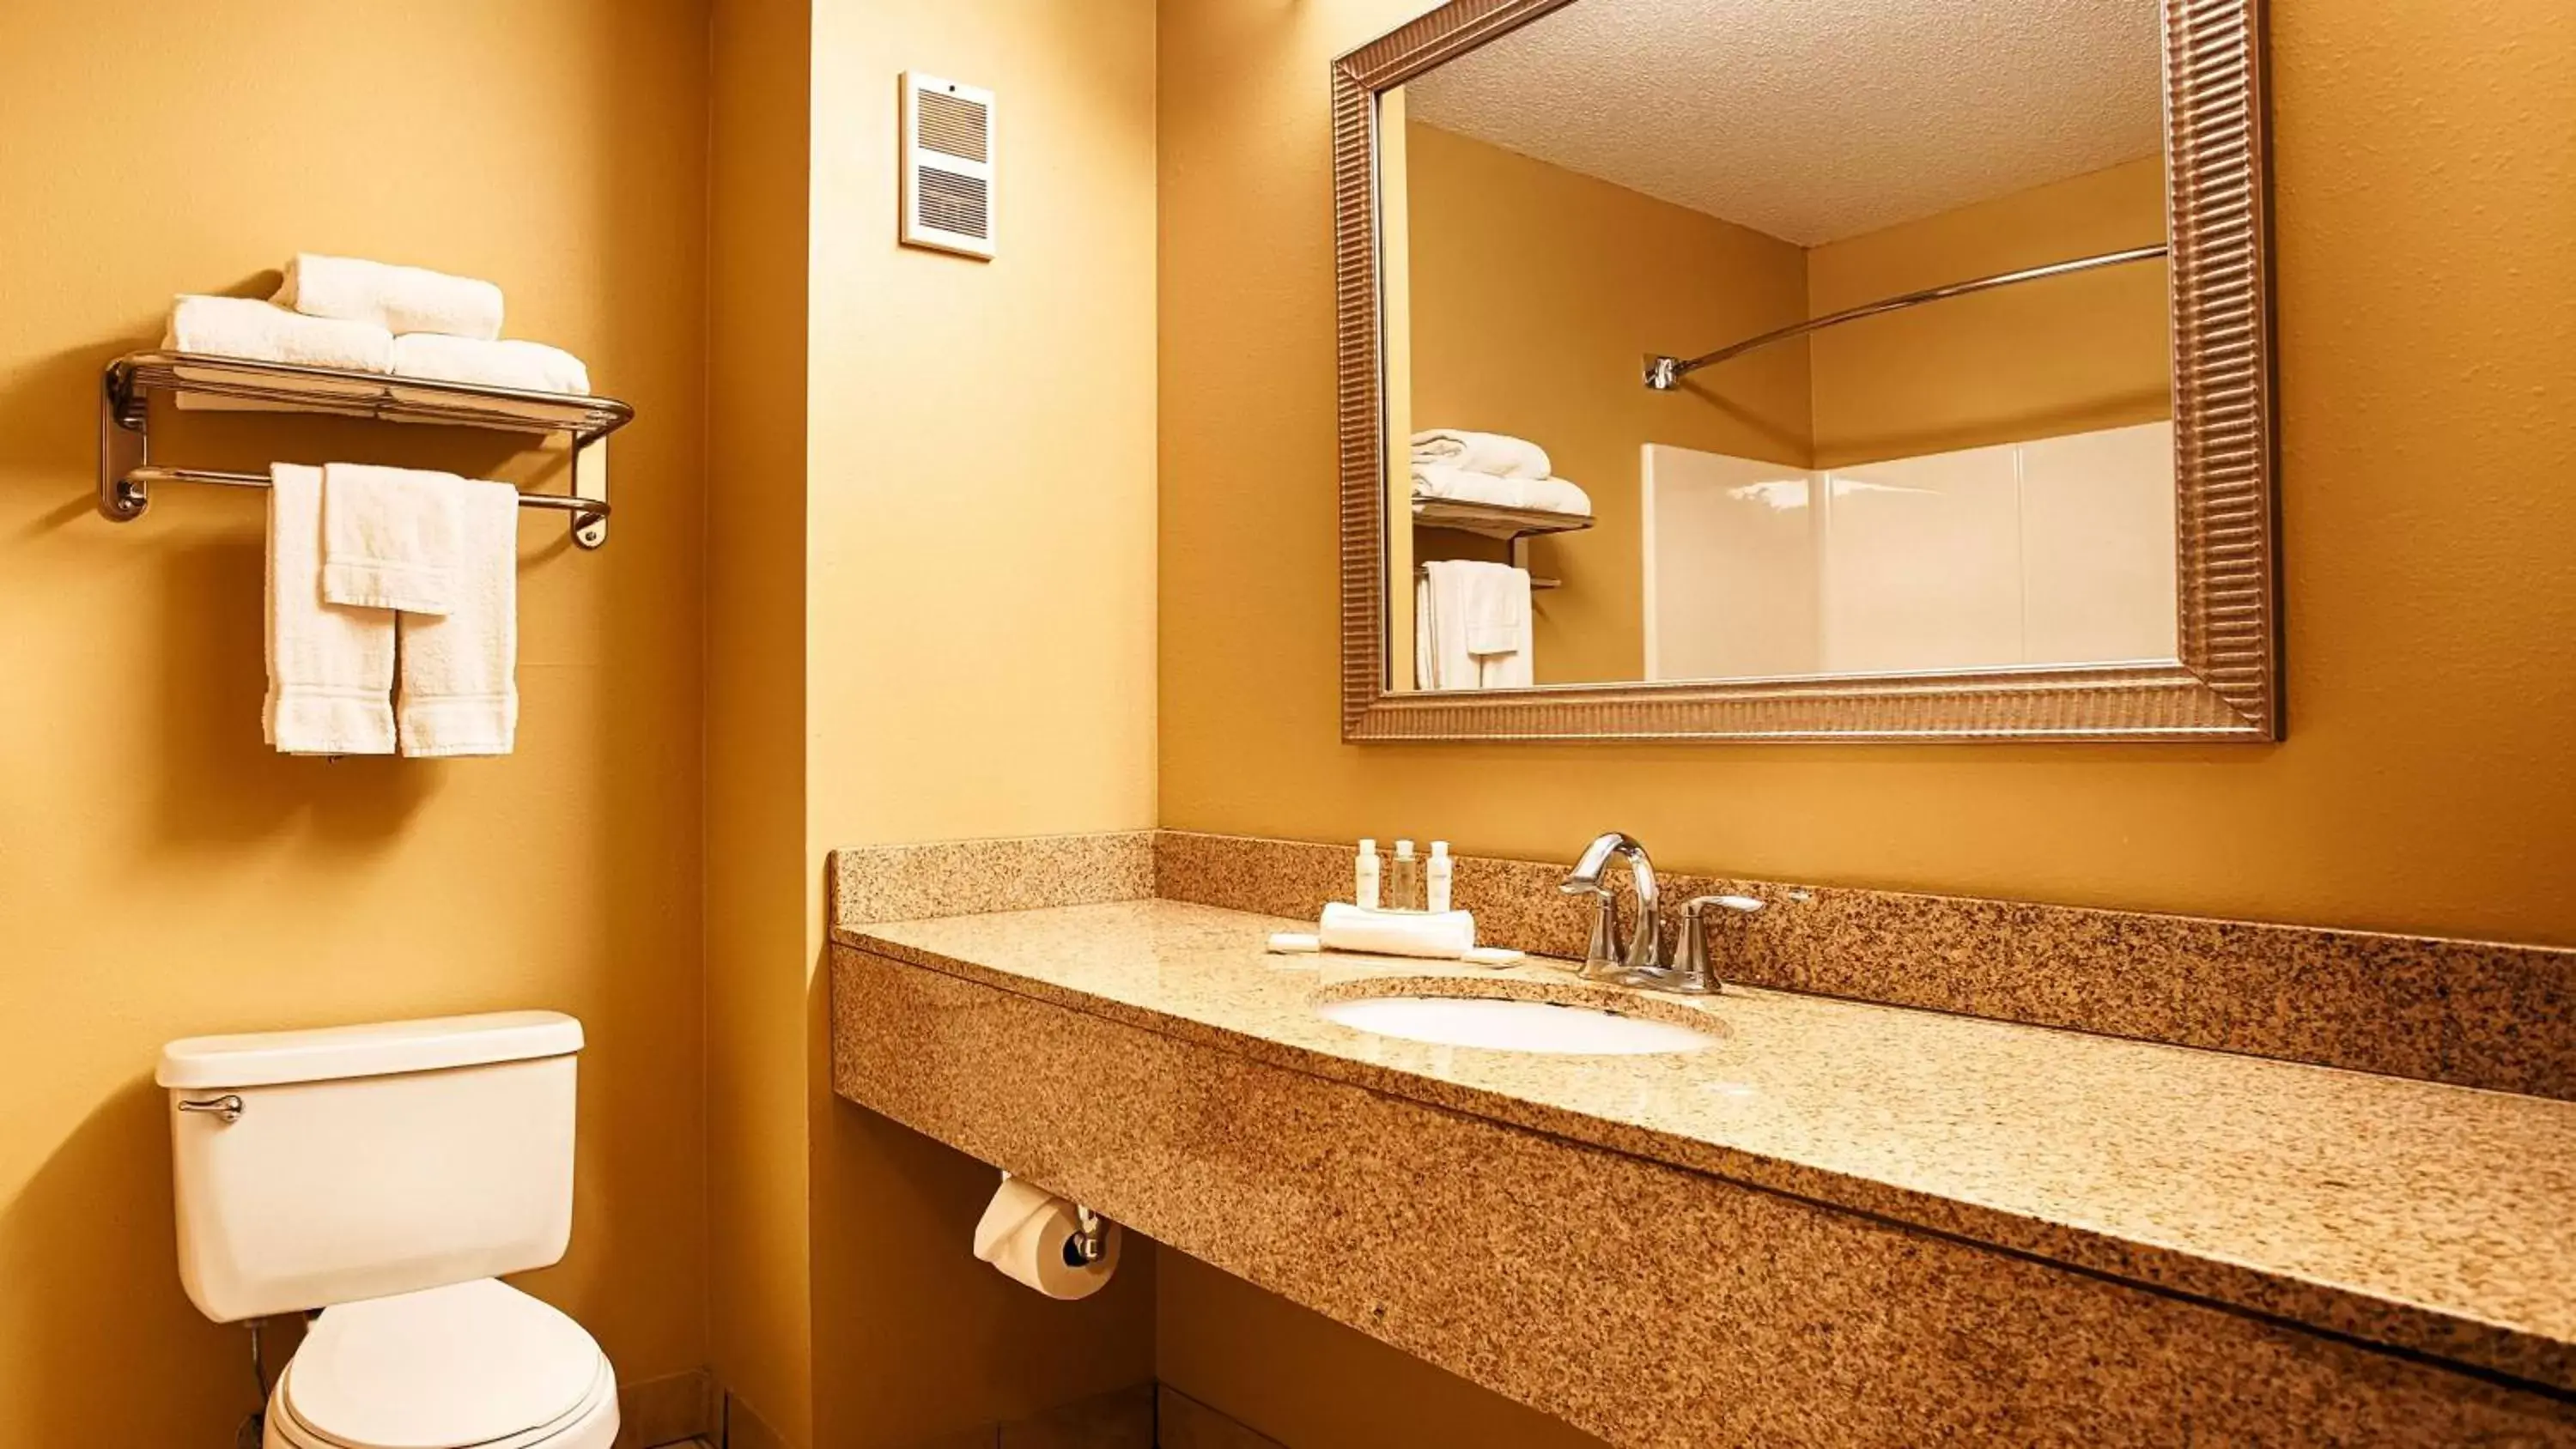 Toilet, Bathroom in Best Western PLUS Executive Inn